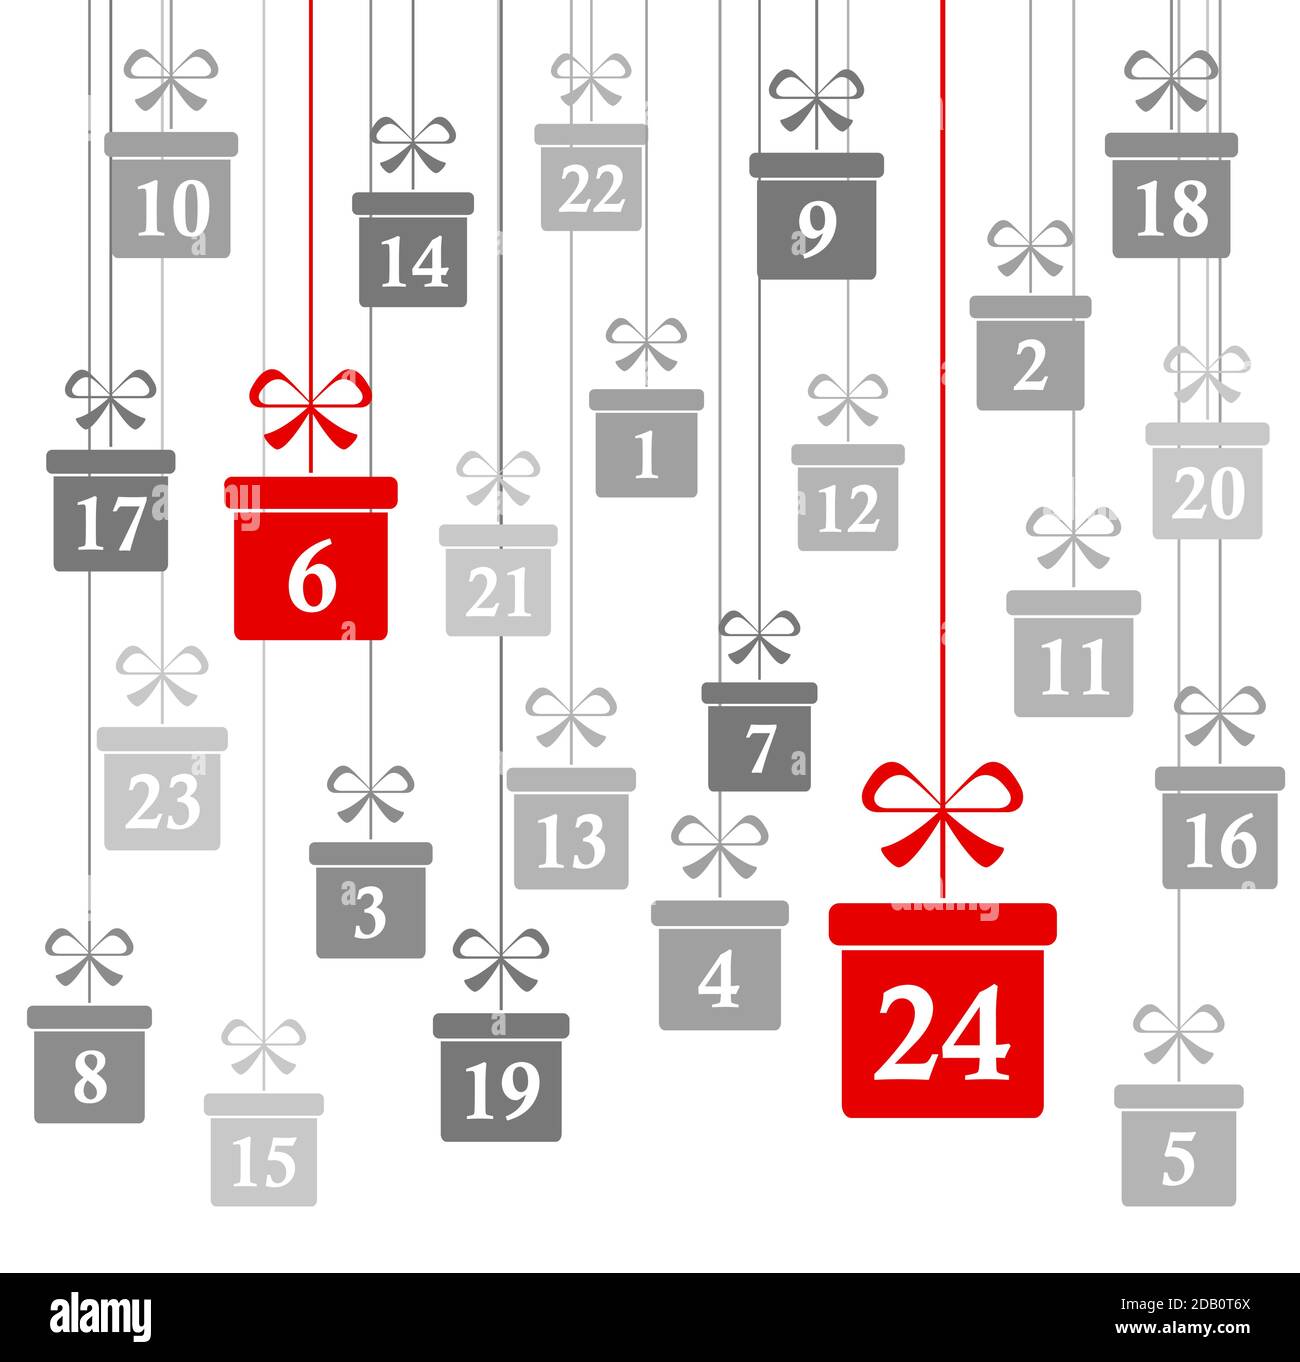 Hängende weihnachtsgeschenke grau mit den Zahlen 1 bis 24 gefärbt Zeigt Adventskalender für Weihnachten und Winterzeitkonzepte Panorama Stil Stock Vektor